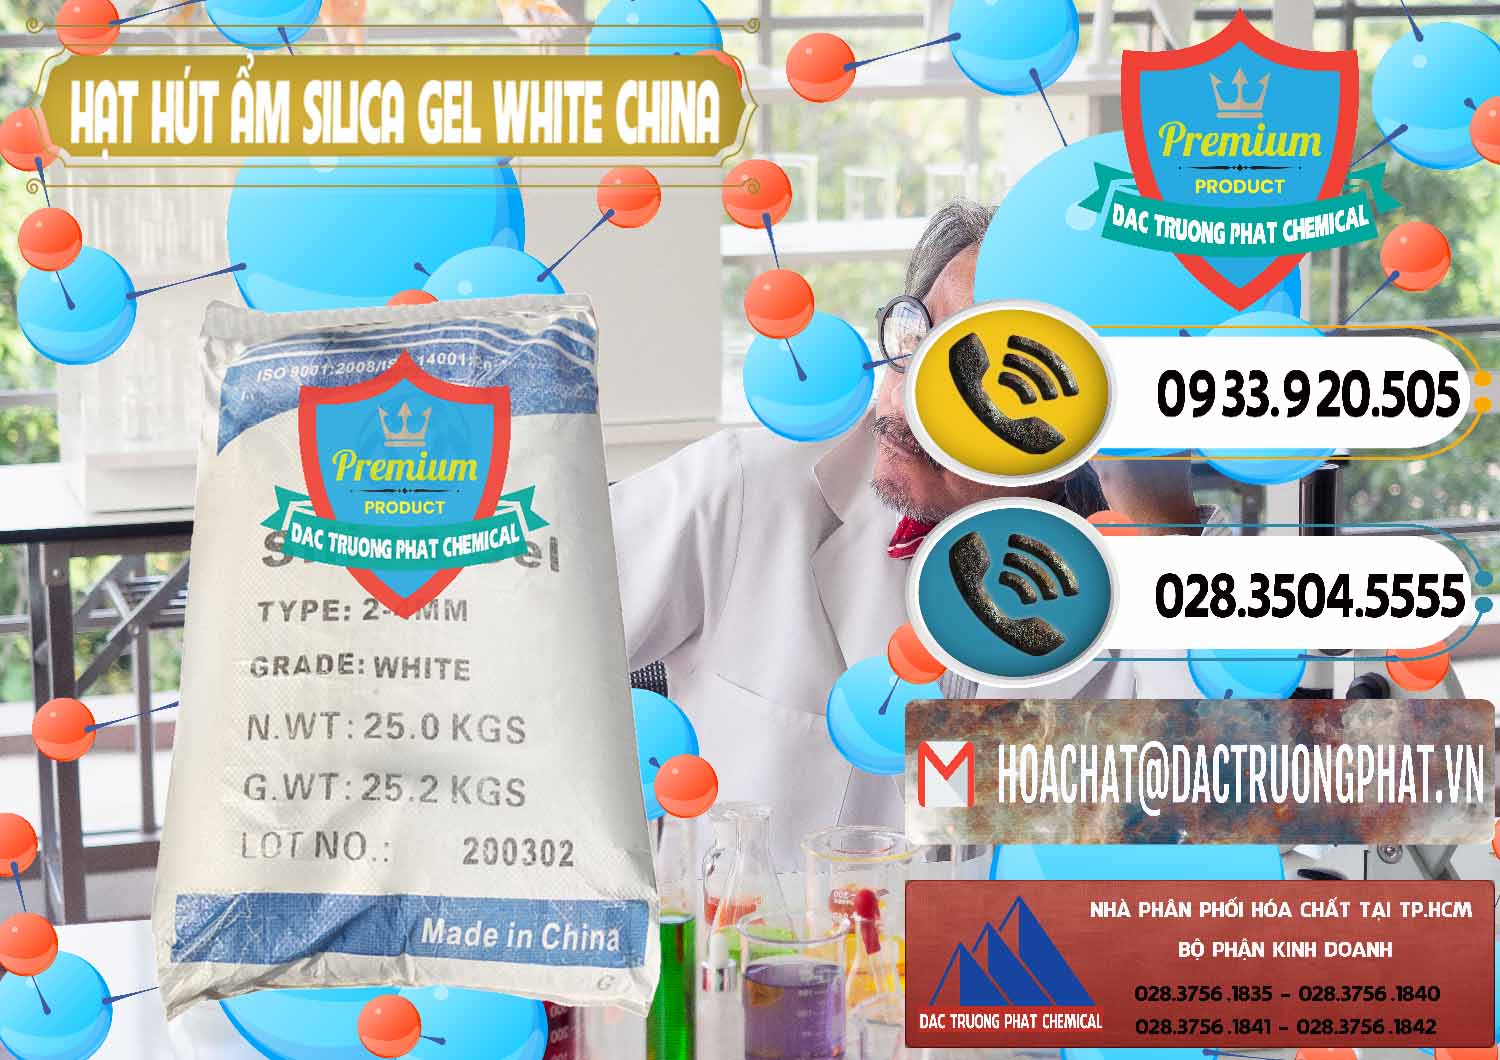 Cty chuyên phân phối _ bán Hạt Hút Ẩm Silica Gel White Trung Quốc China - 0297 - Cty kinh doanh - phân phối hóa chất tại TP.HCM - hoachatdetnhuom.vn